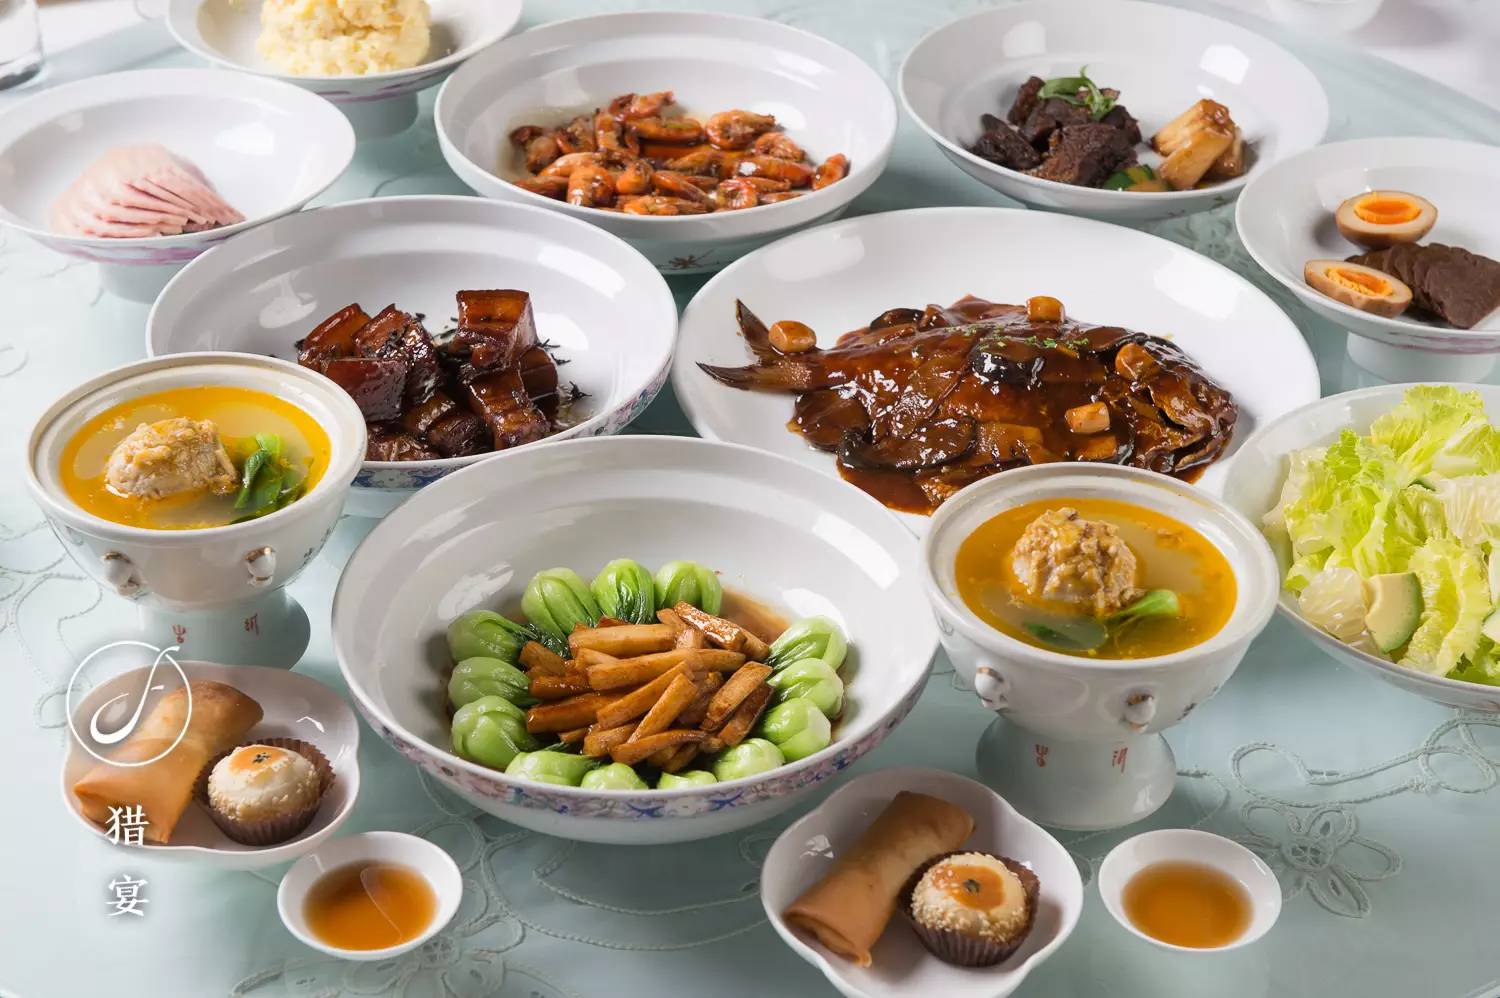 这家餐厅开了十多年了,在去年的上海米其林餐厅评选中勇夺两颗星星.